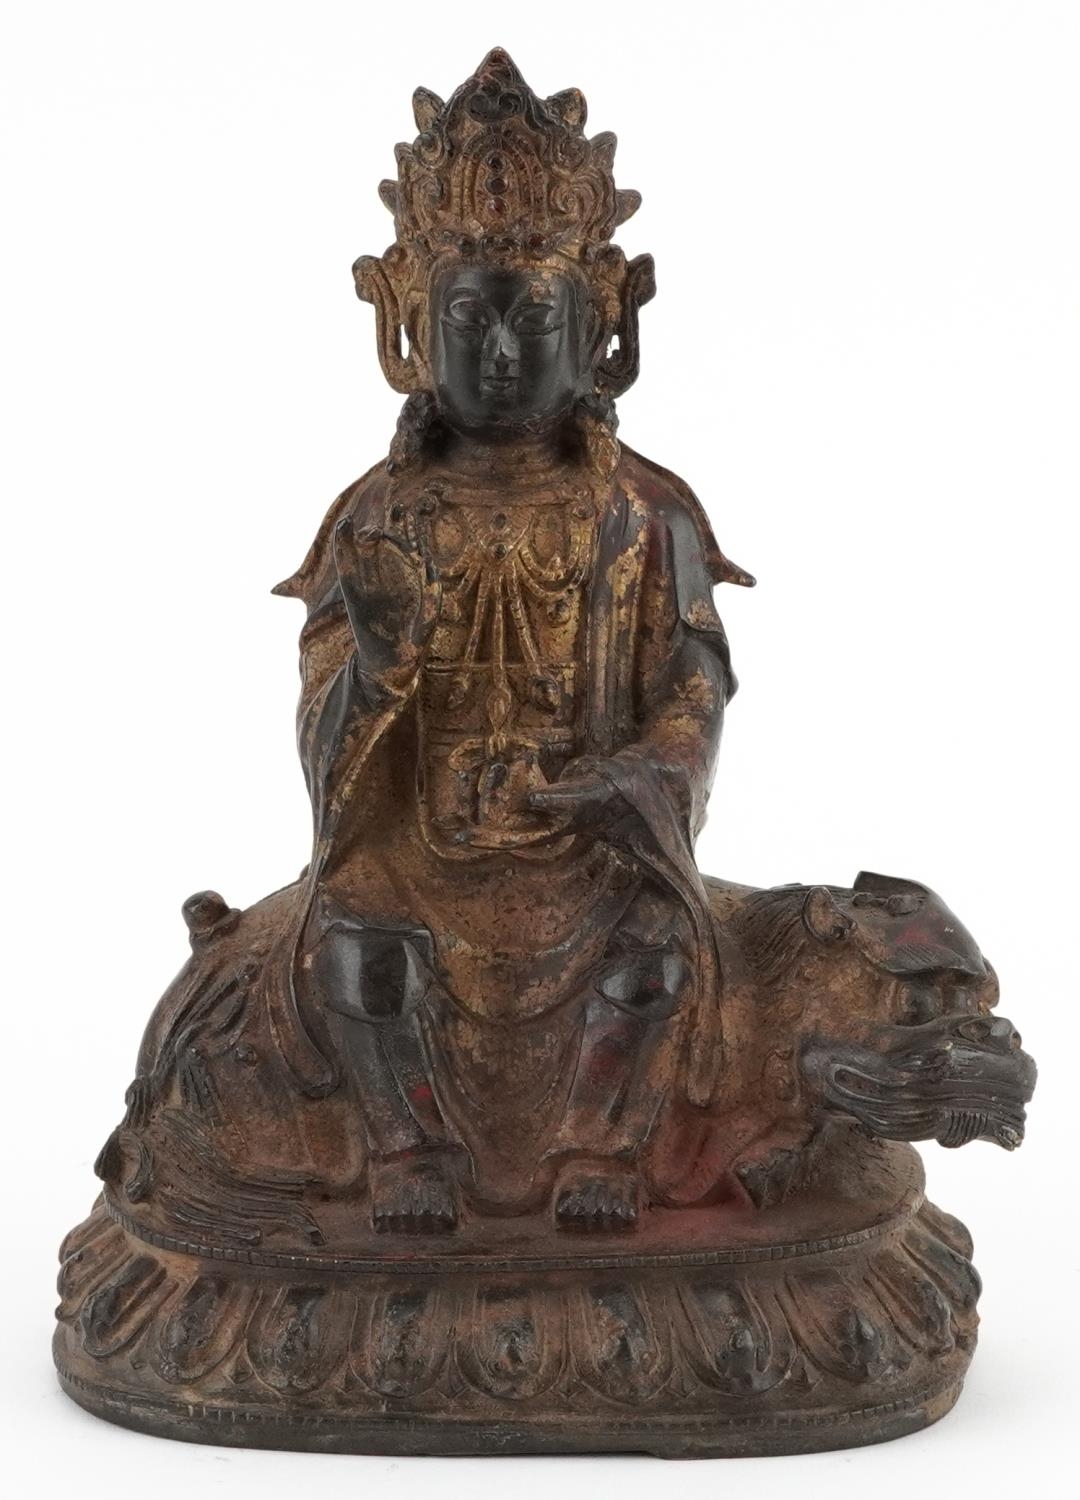 Chino Tibetan gilt bronze figure of Buddha on mythical animal, 22.5cm high